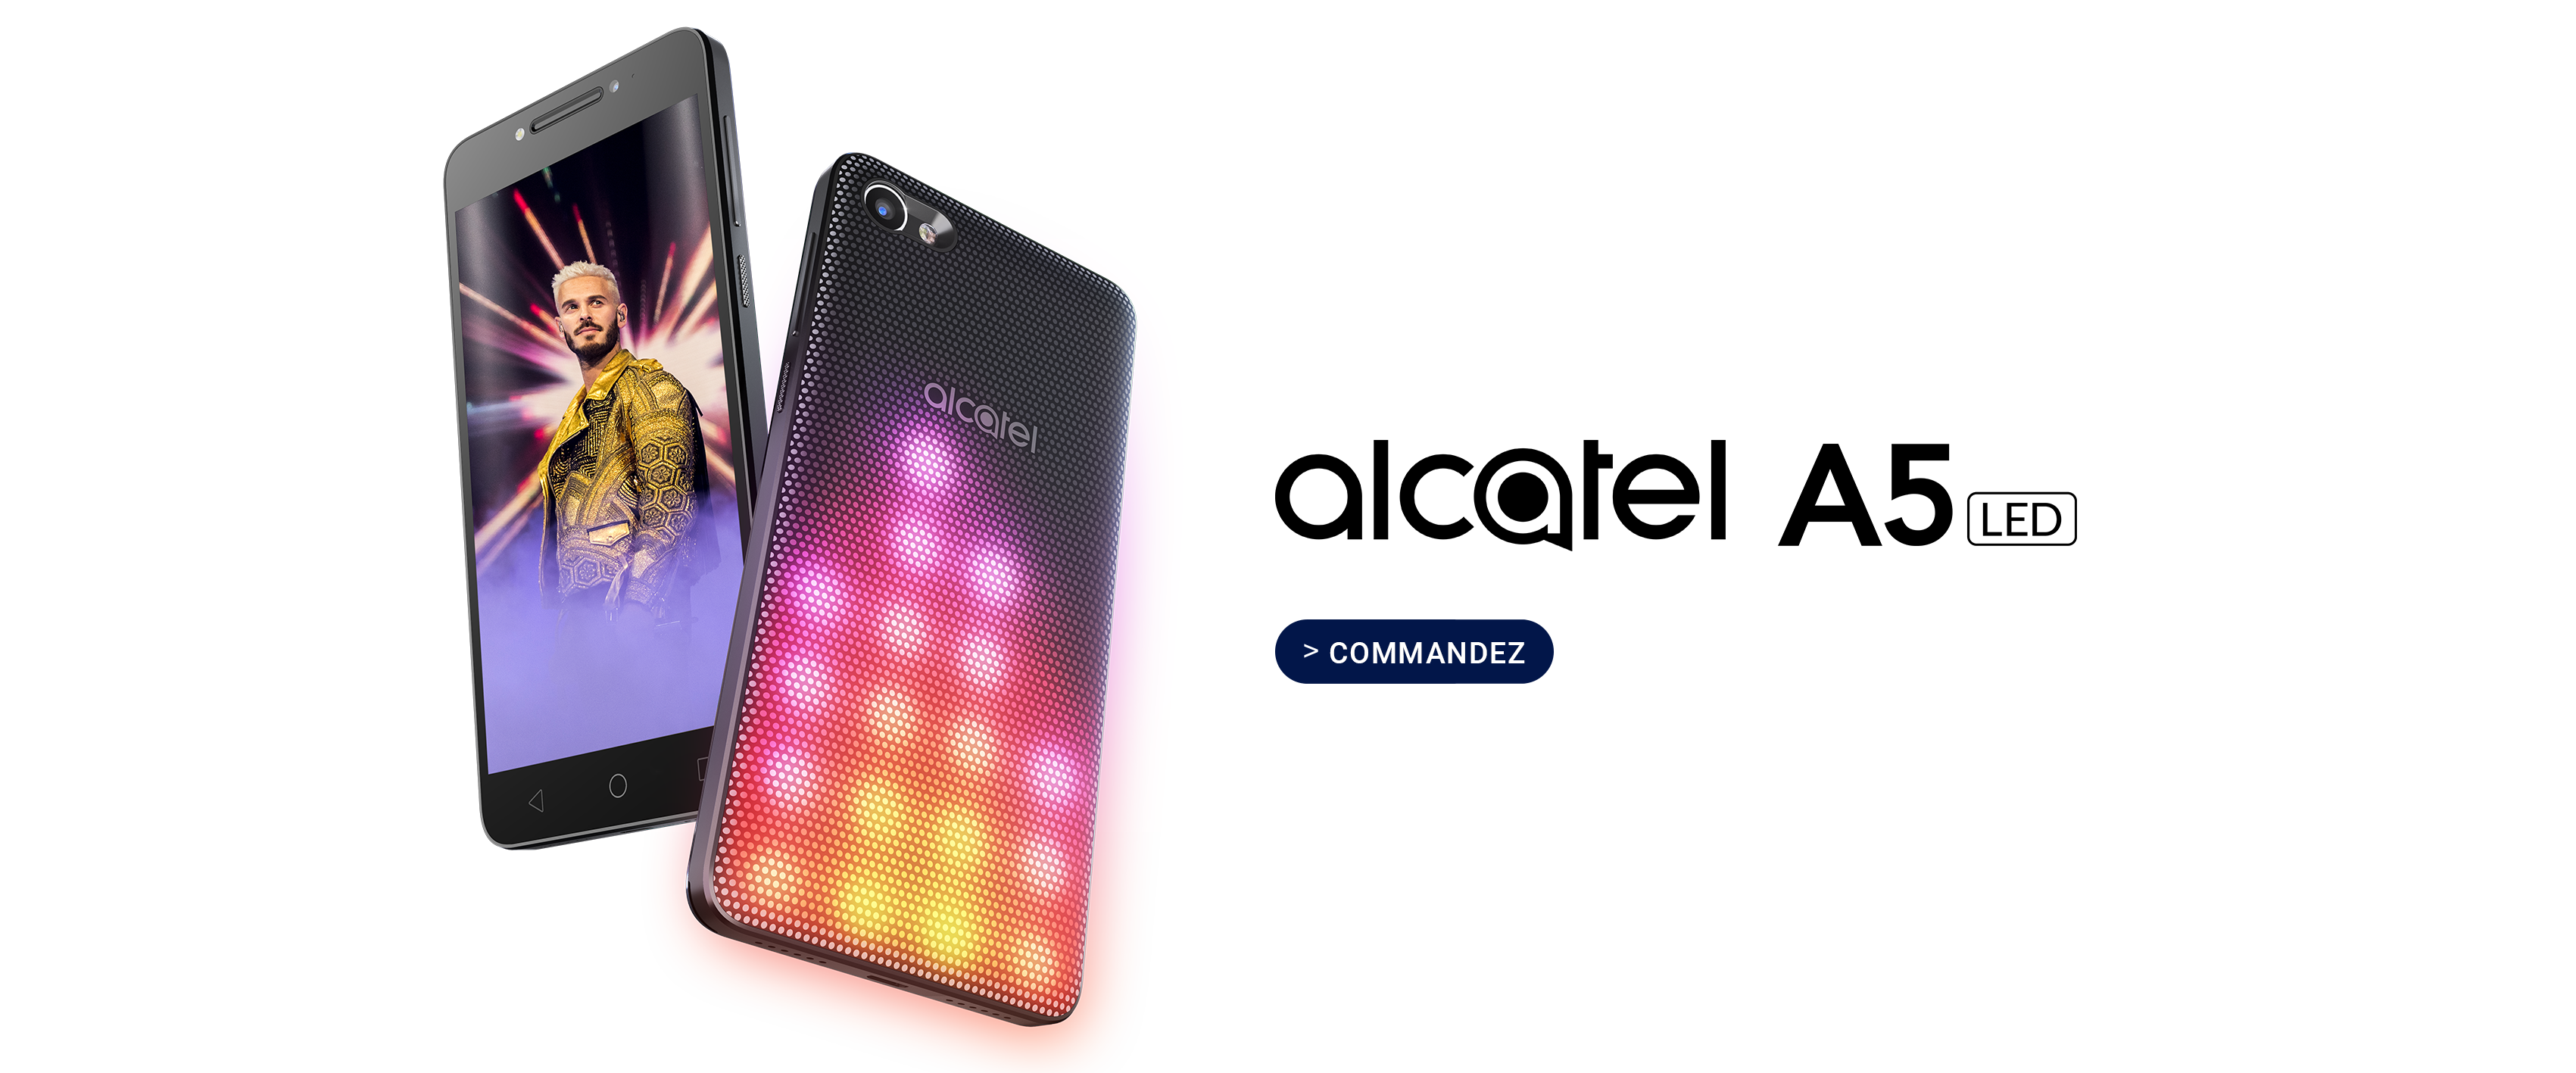 alcatel-a5-led